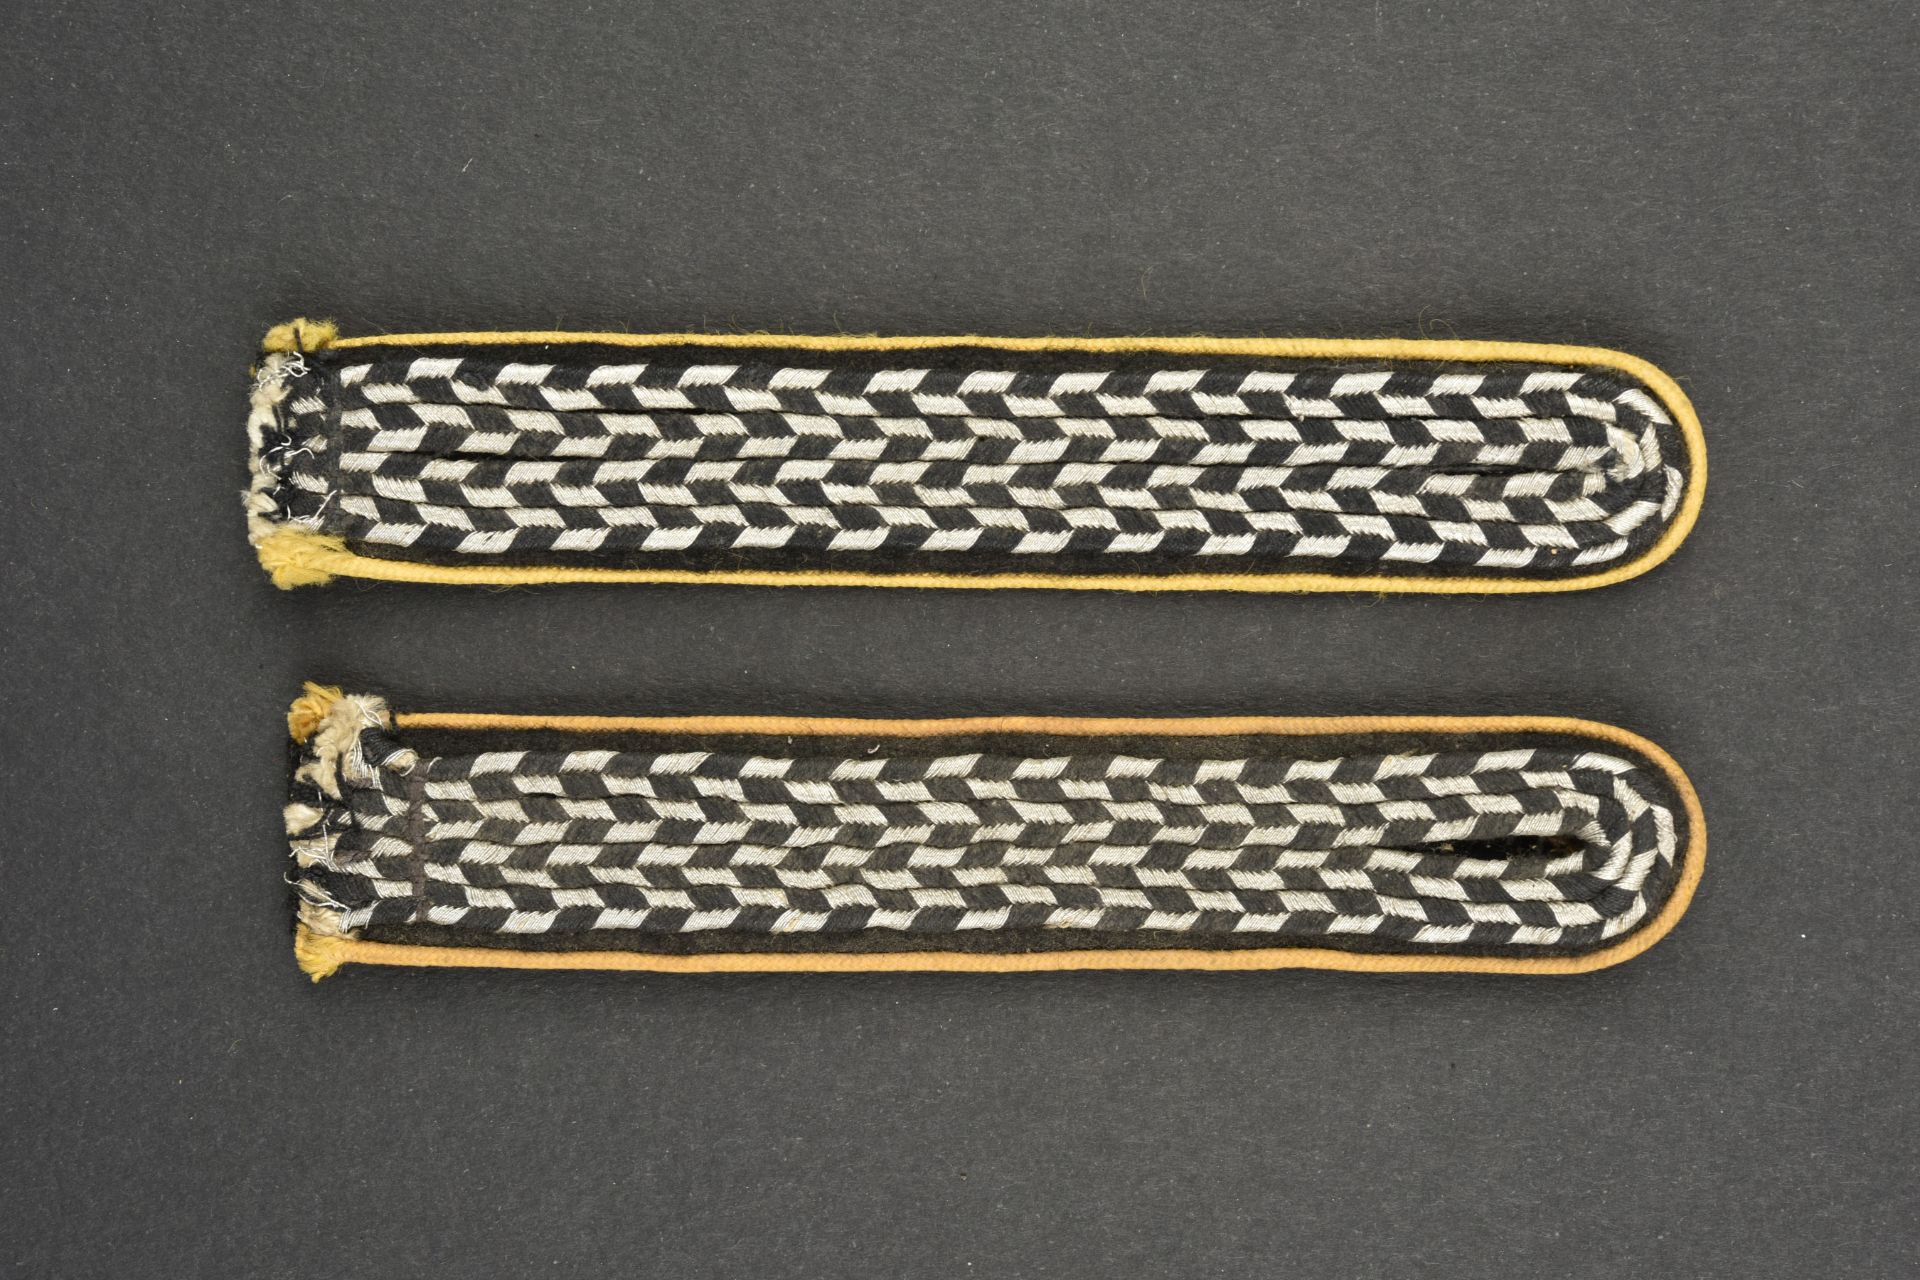 Pattes d'Žpaule NSKK. NSKK shoulder straps.